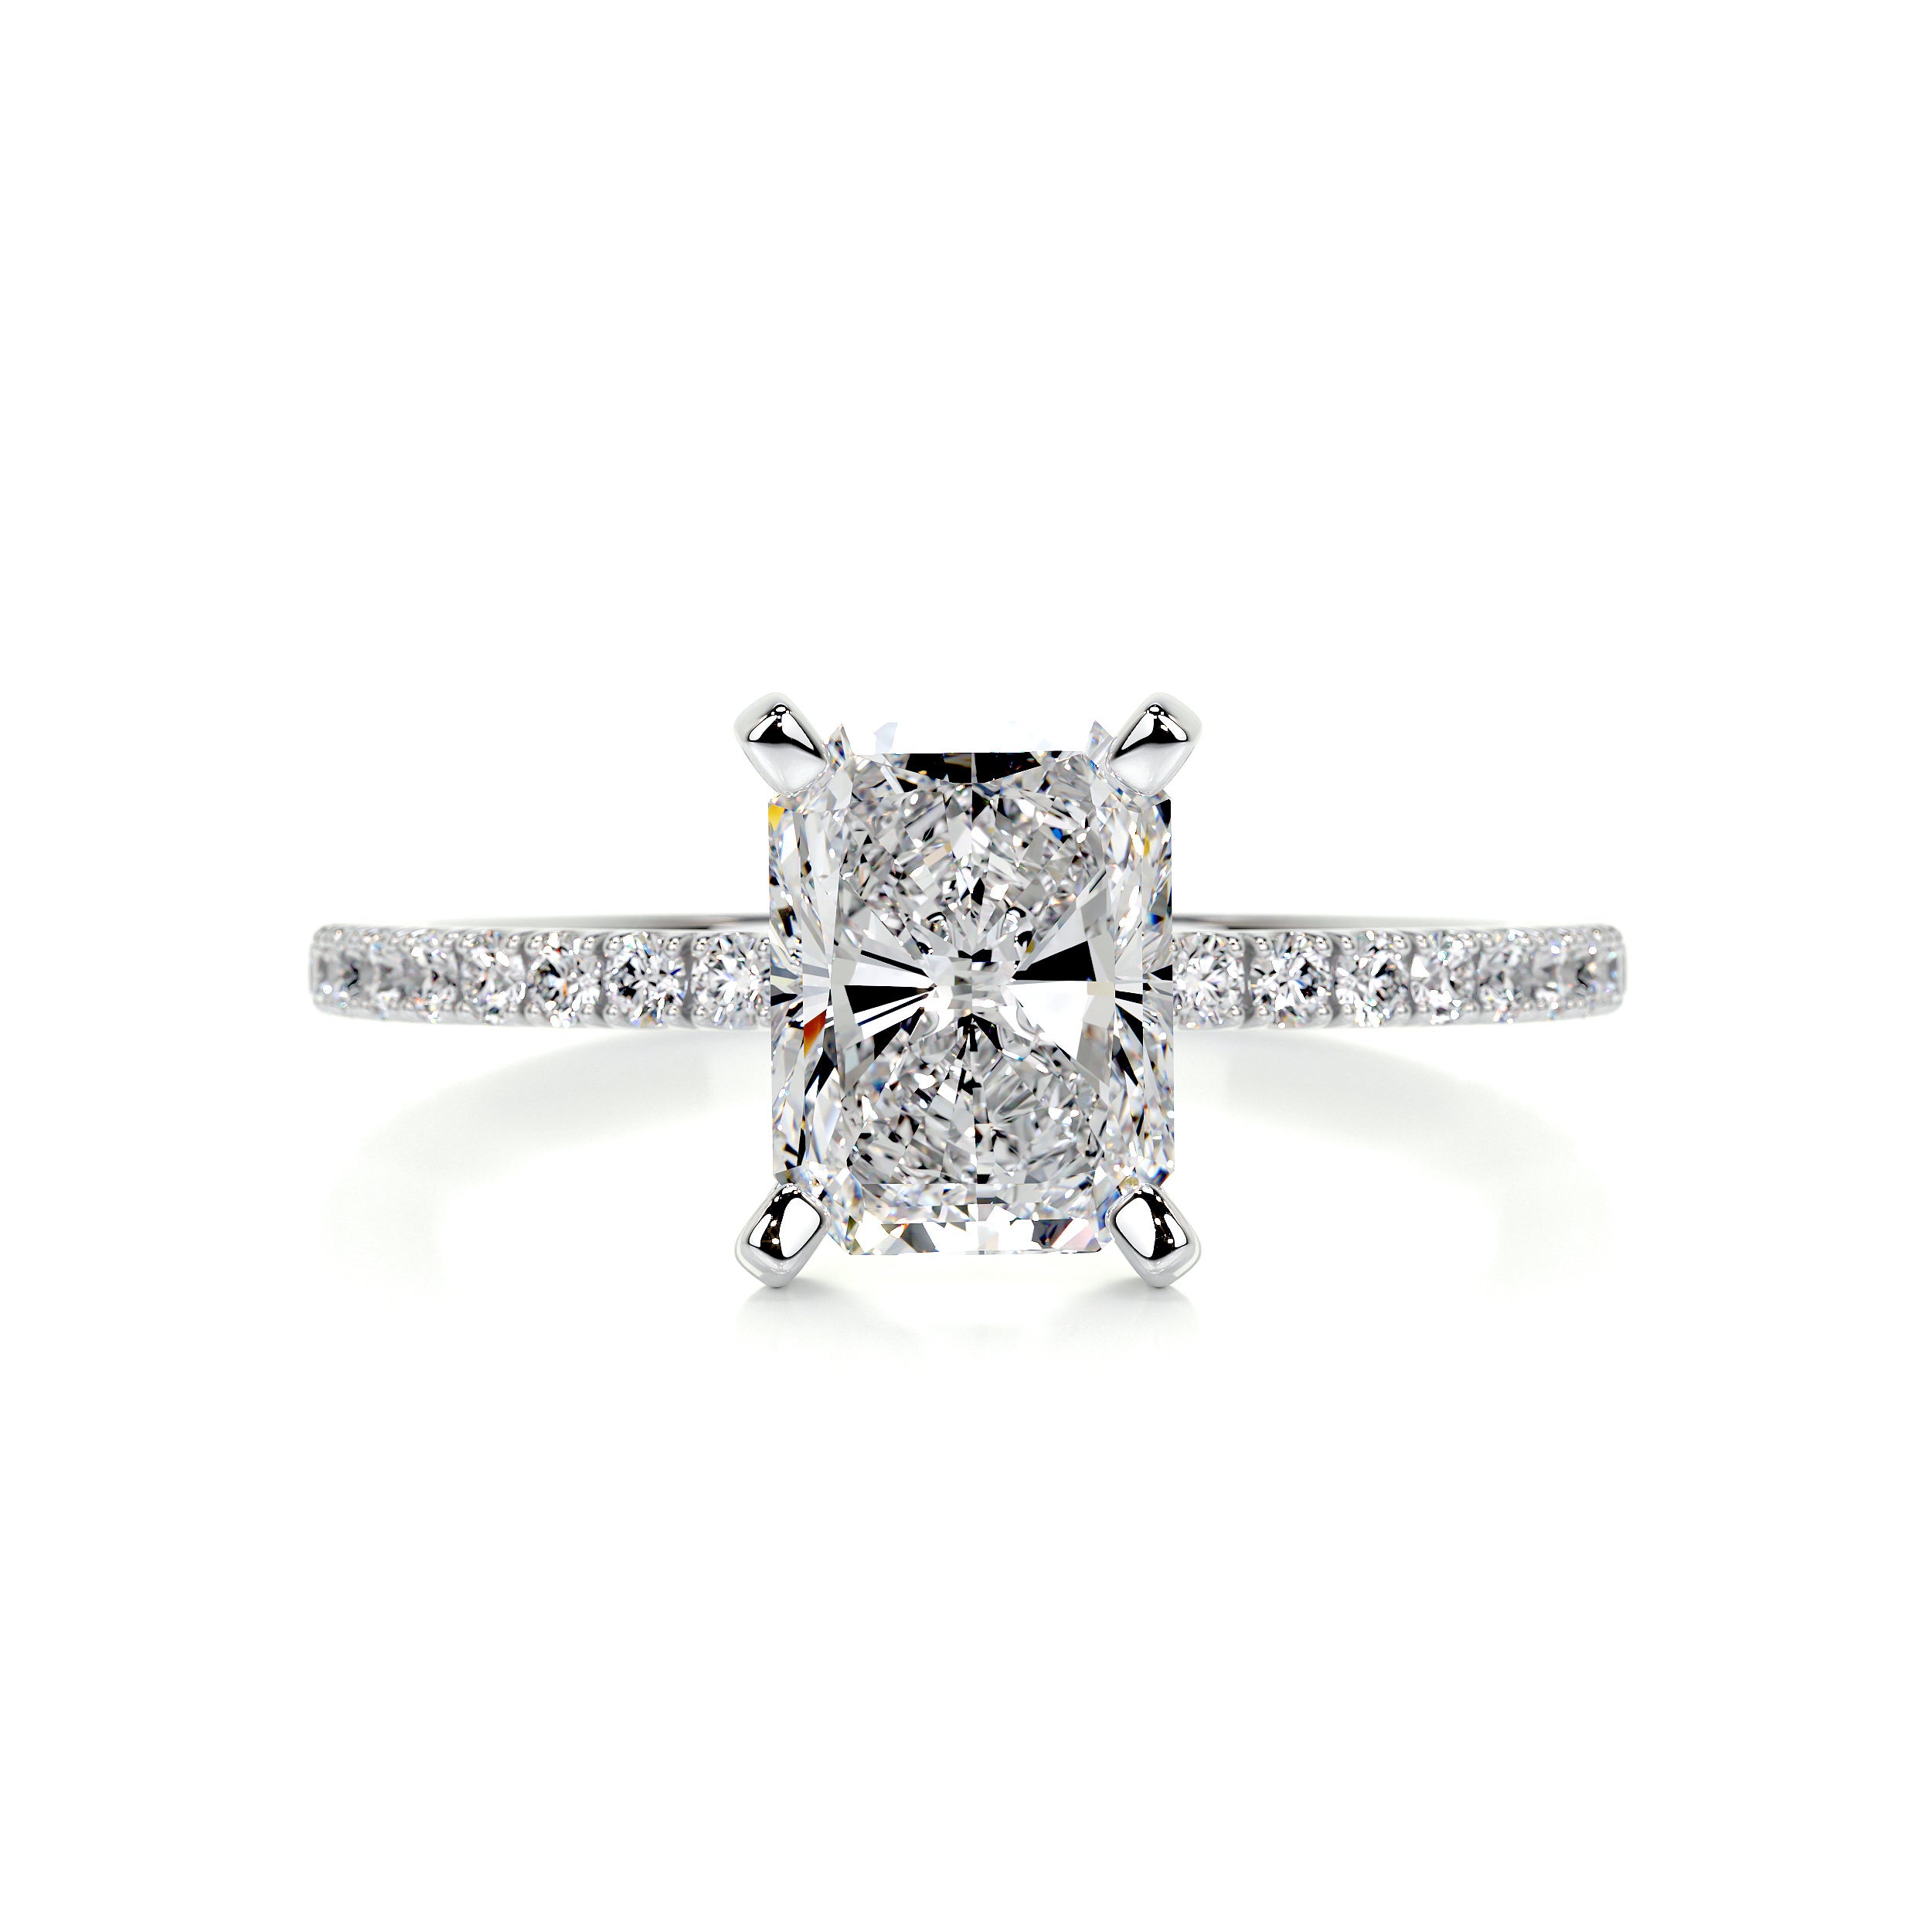 Audrey Diamond Engagement Ring   (1.8 Carat) -14K White Gold